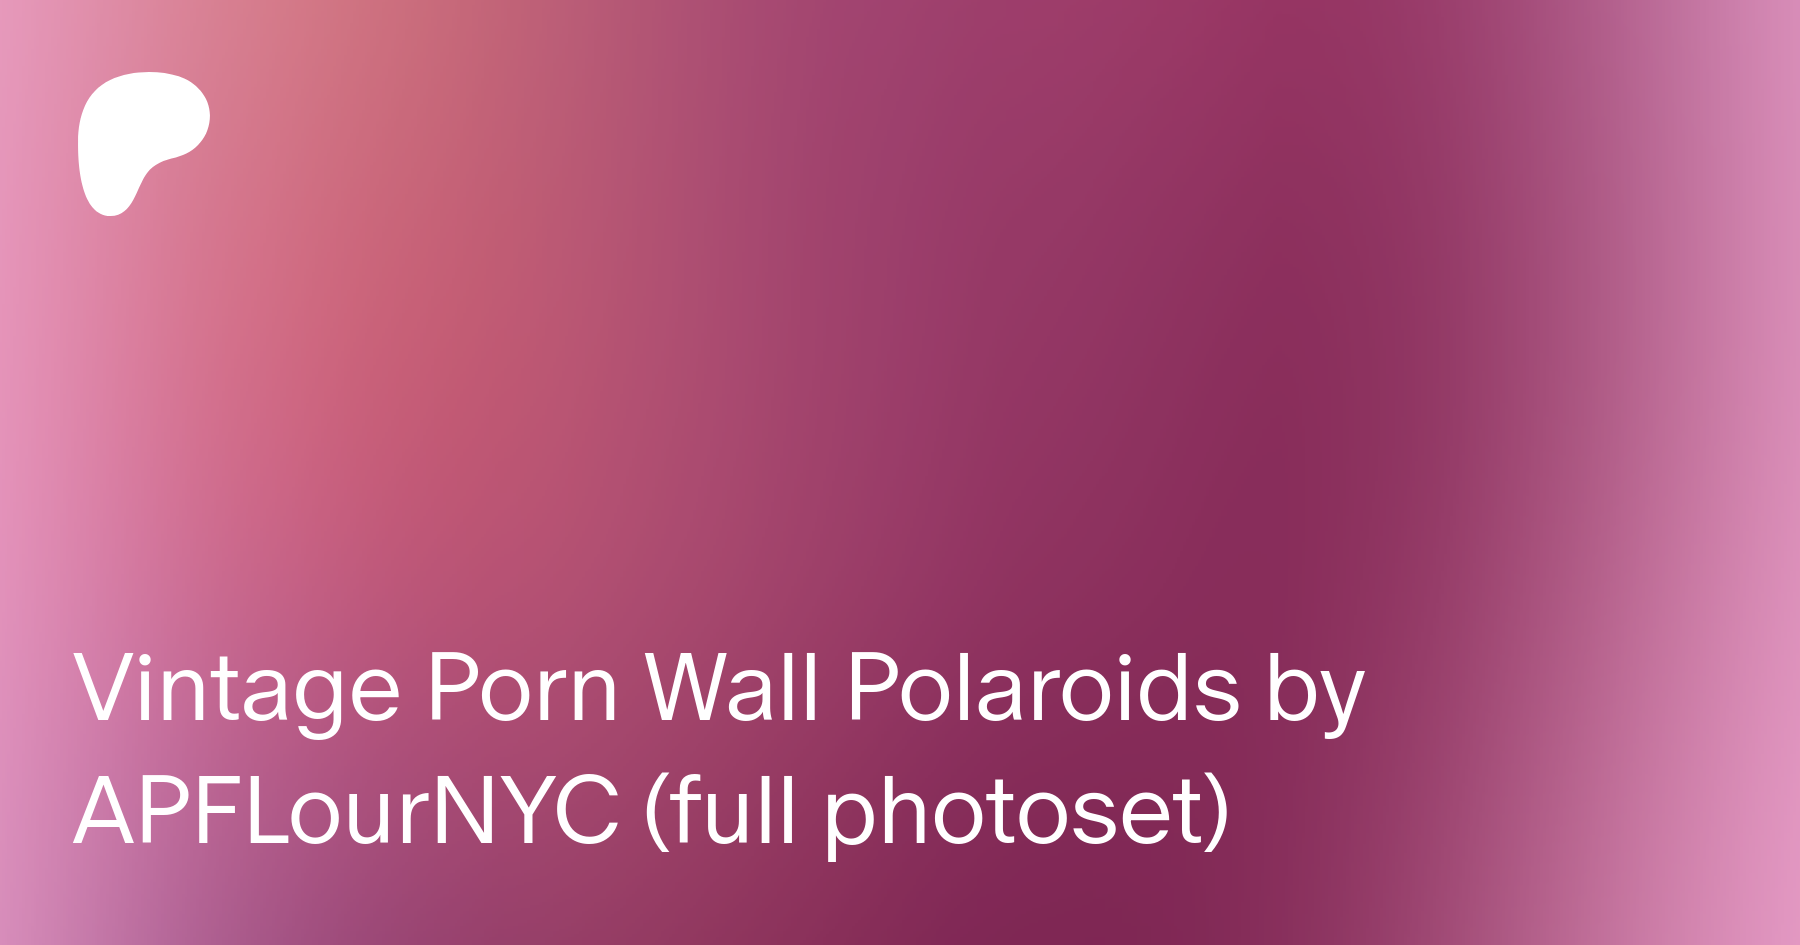 1518px x 759px - Vintage Porn Wall Polaroids by APFLourNYC (full photoset) | Patreon